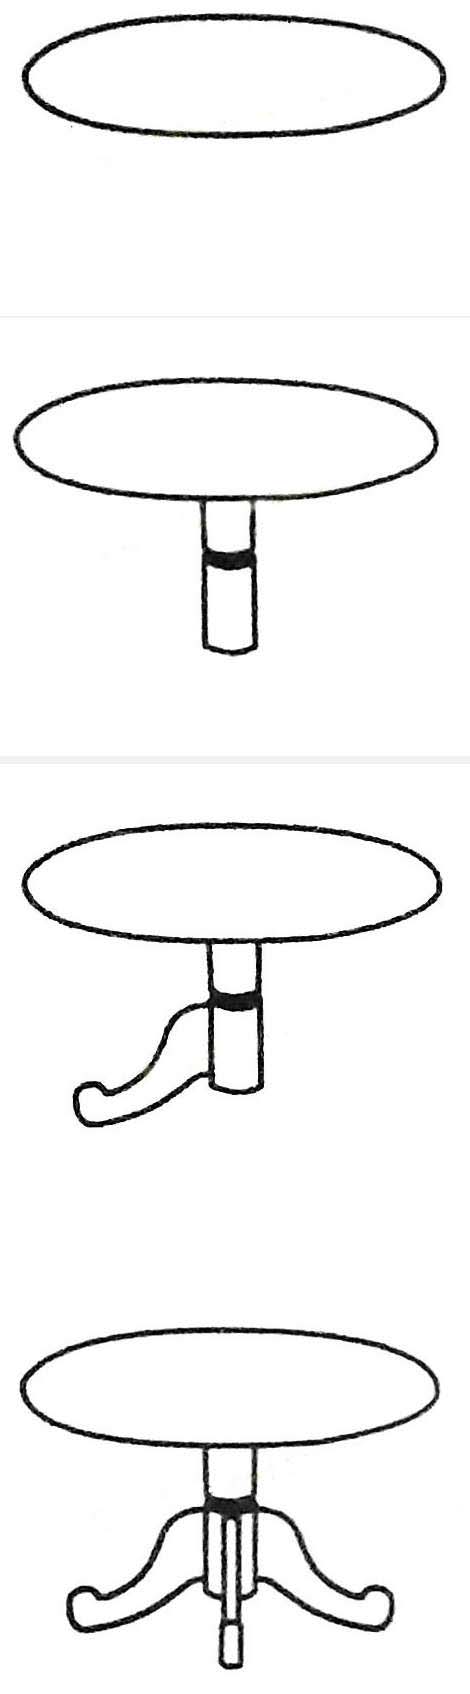 圆形餐桌简笔画怎么画带步骤教程 桌子简笔画图片